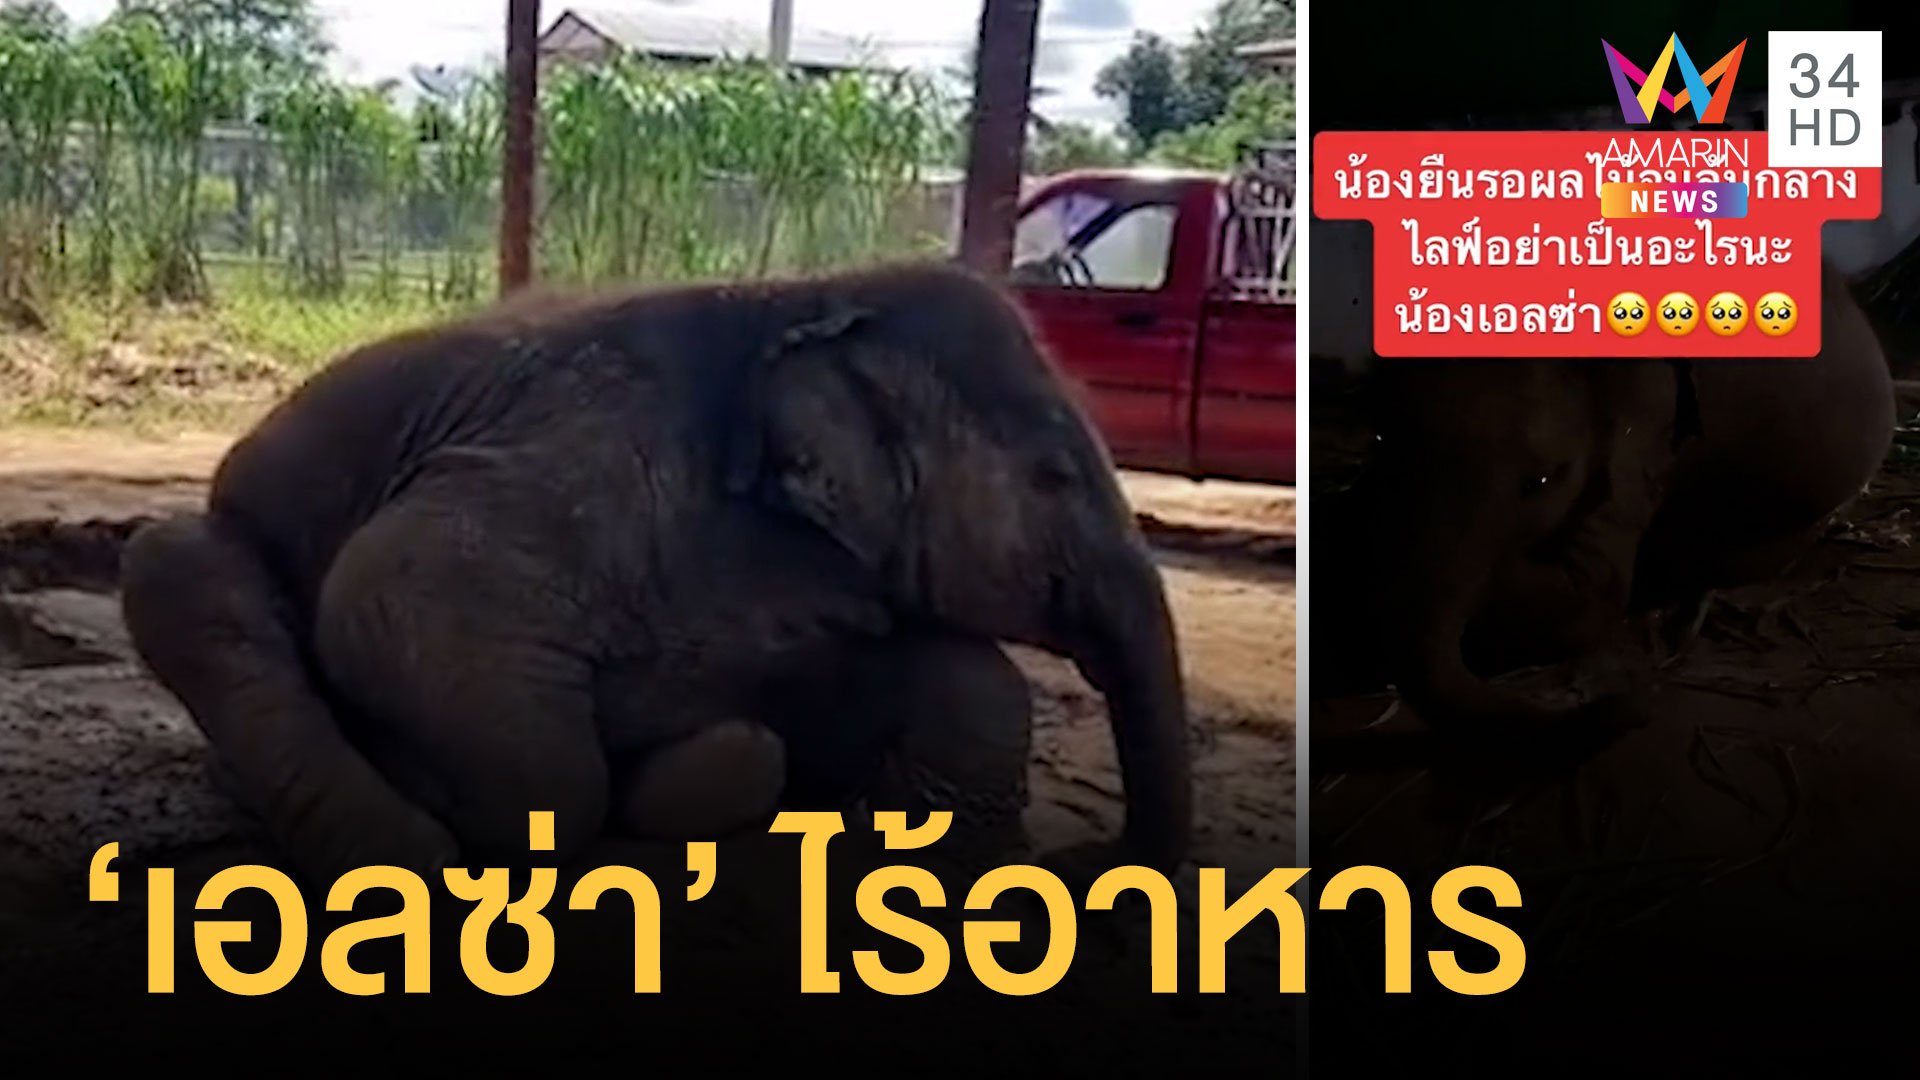 พิษโควิด ช้างไม่มีอาหาร ควานช้างต้องไลฟ์รับบริจาค | ข่าวอรุณอมรินทร์ | 25 พ.ย. 64 | AMARIN TVHD34